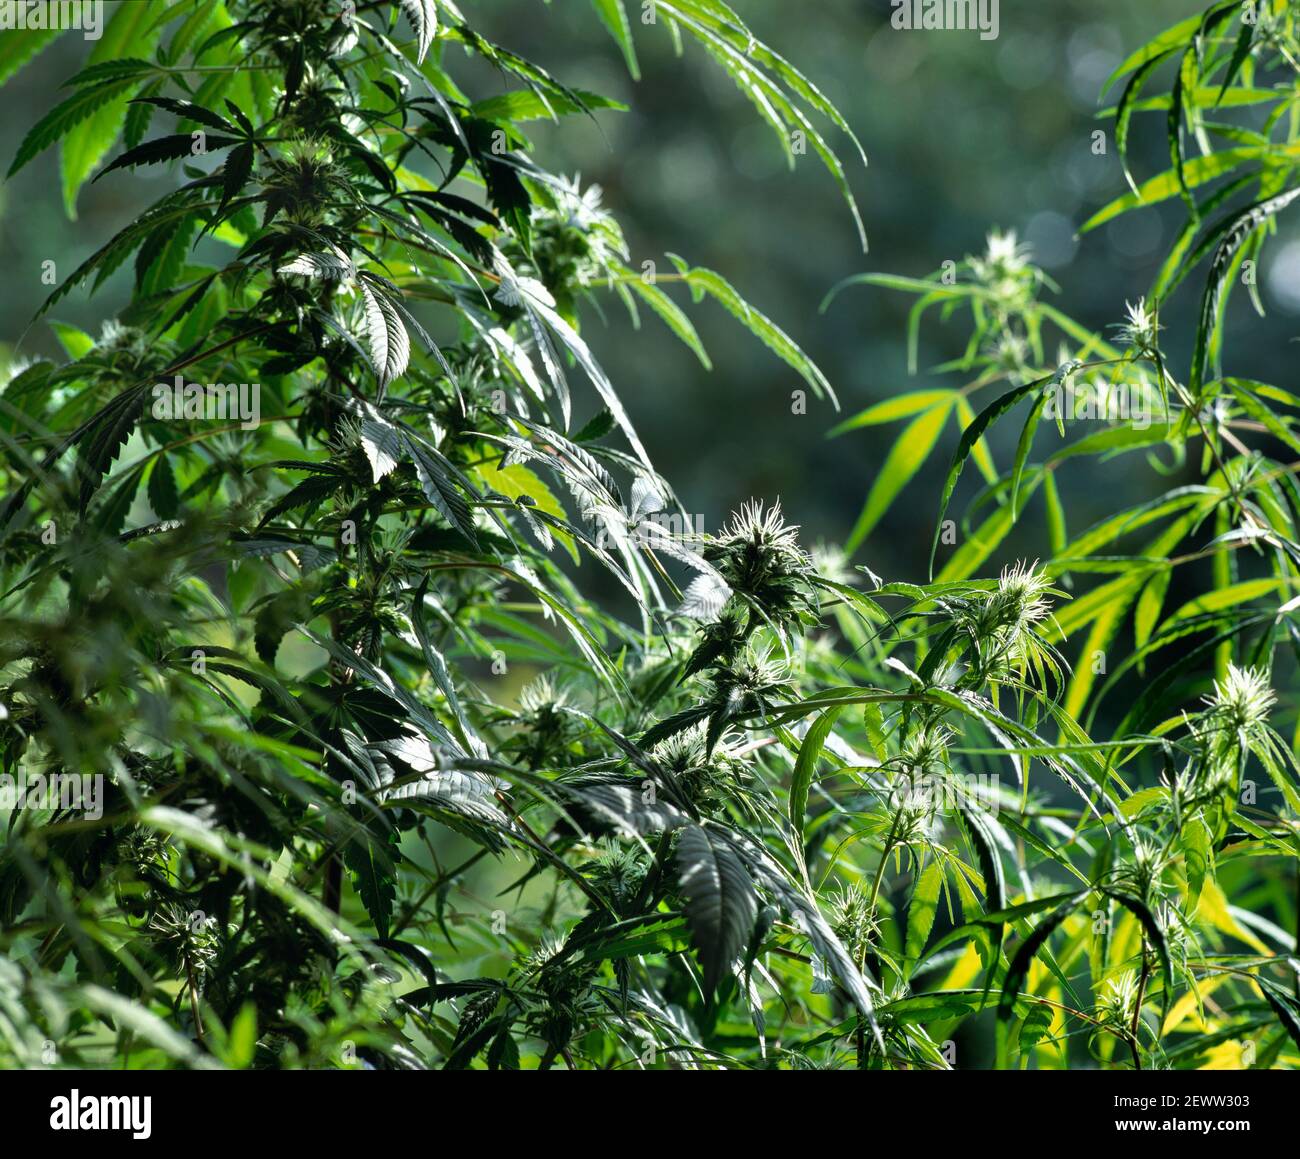 Plants de cannabis poussant dans une véranda, quelque part dans le nord de Londres... Banque D'Images